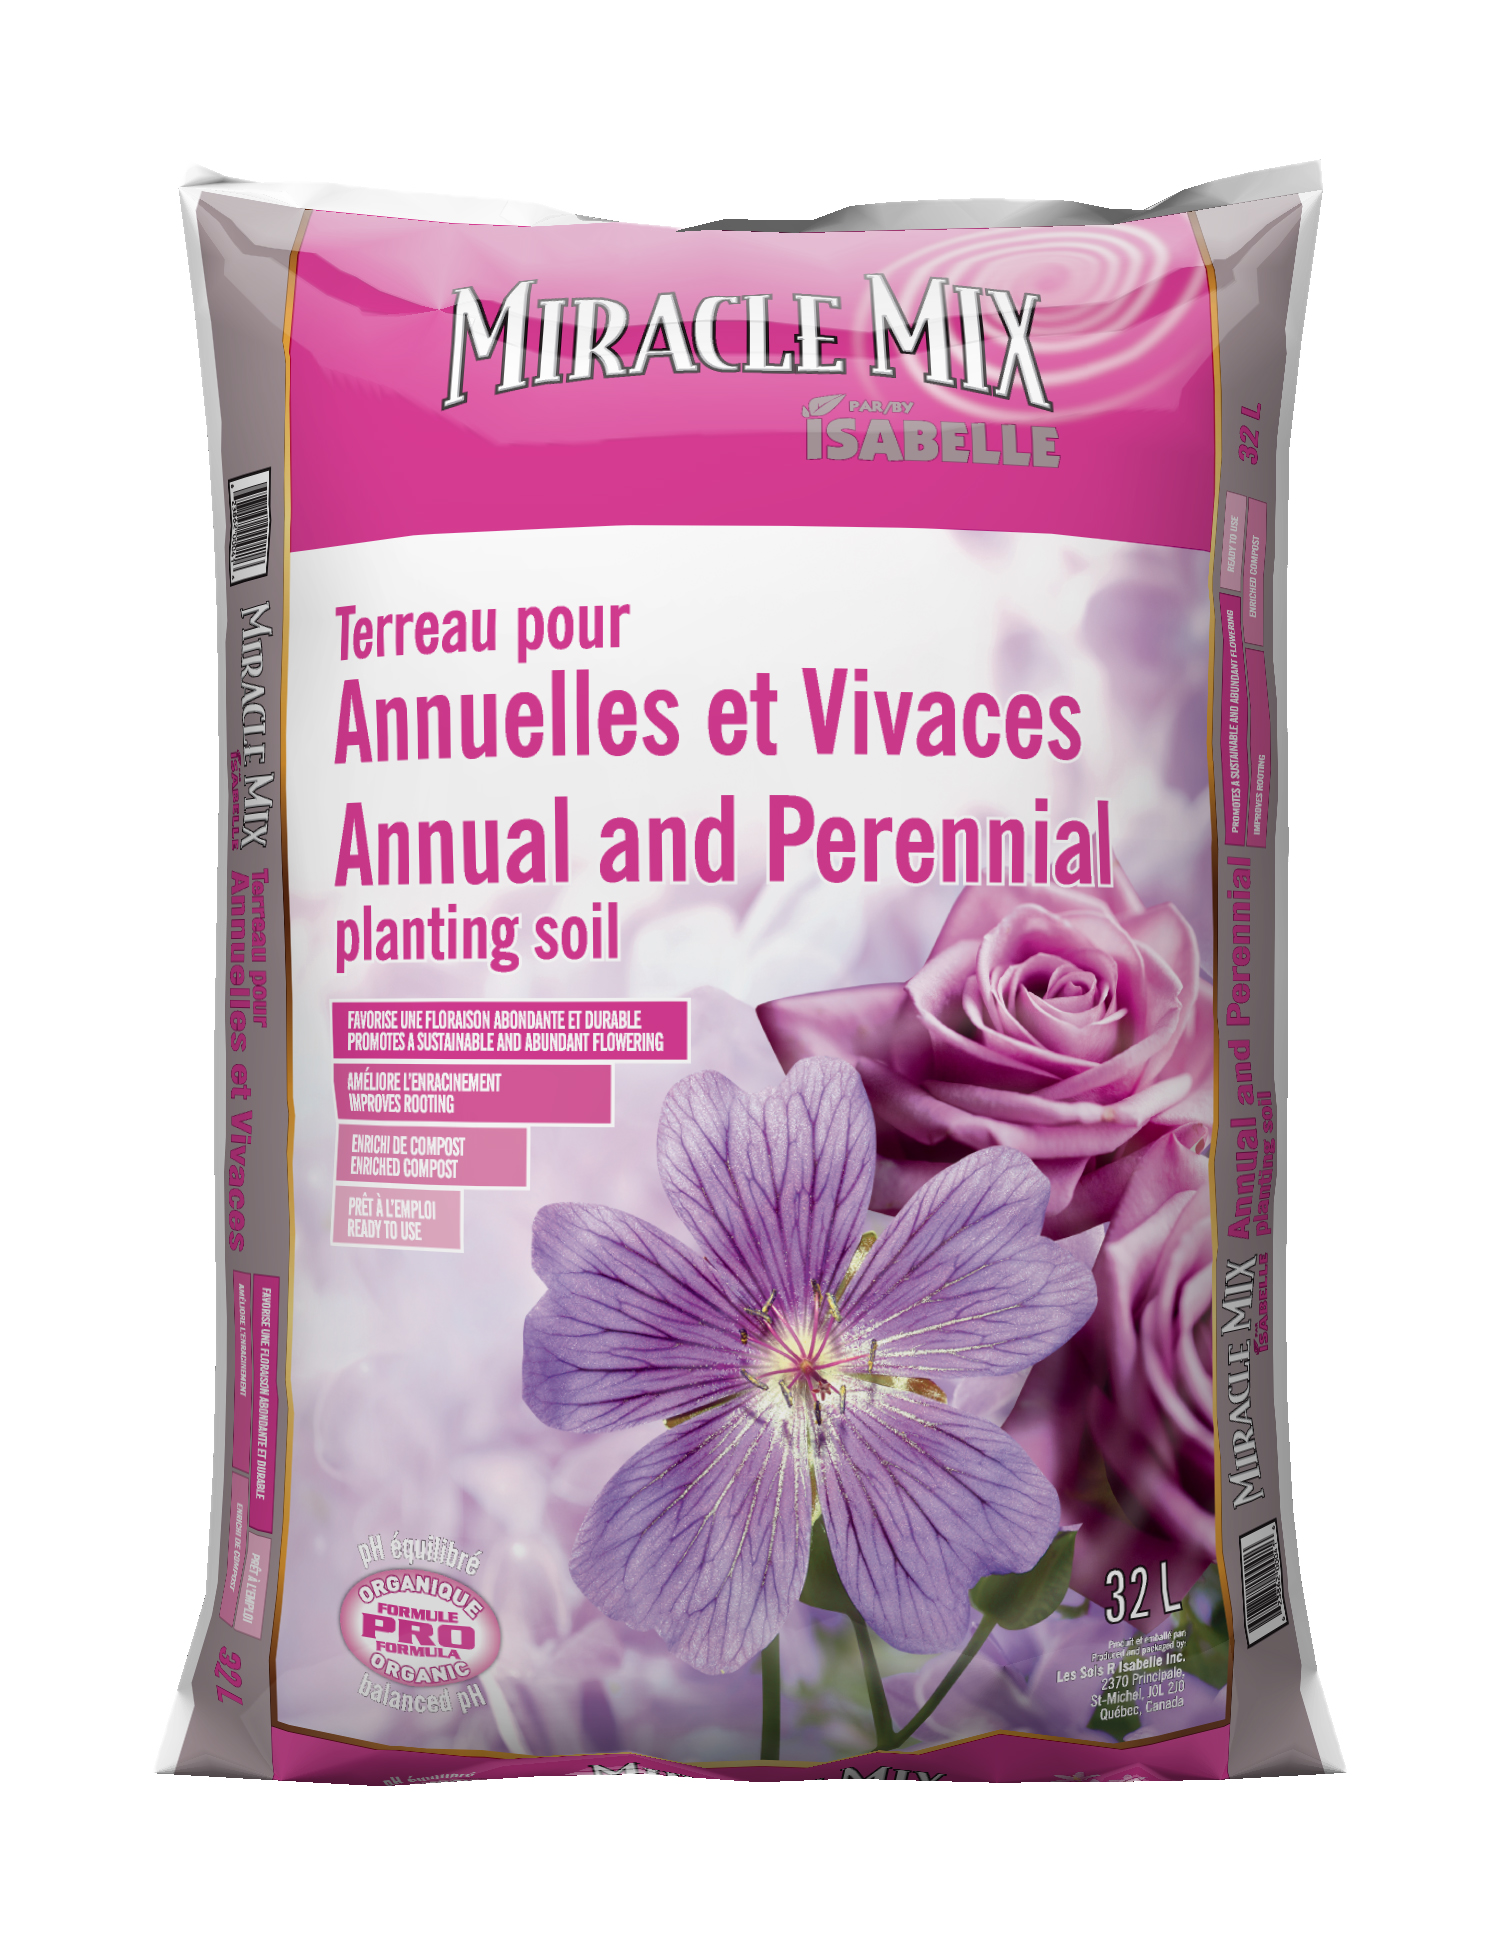 Terreau pour Pousses et semis Miracle Mix - Les sols Isabelle